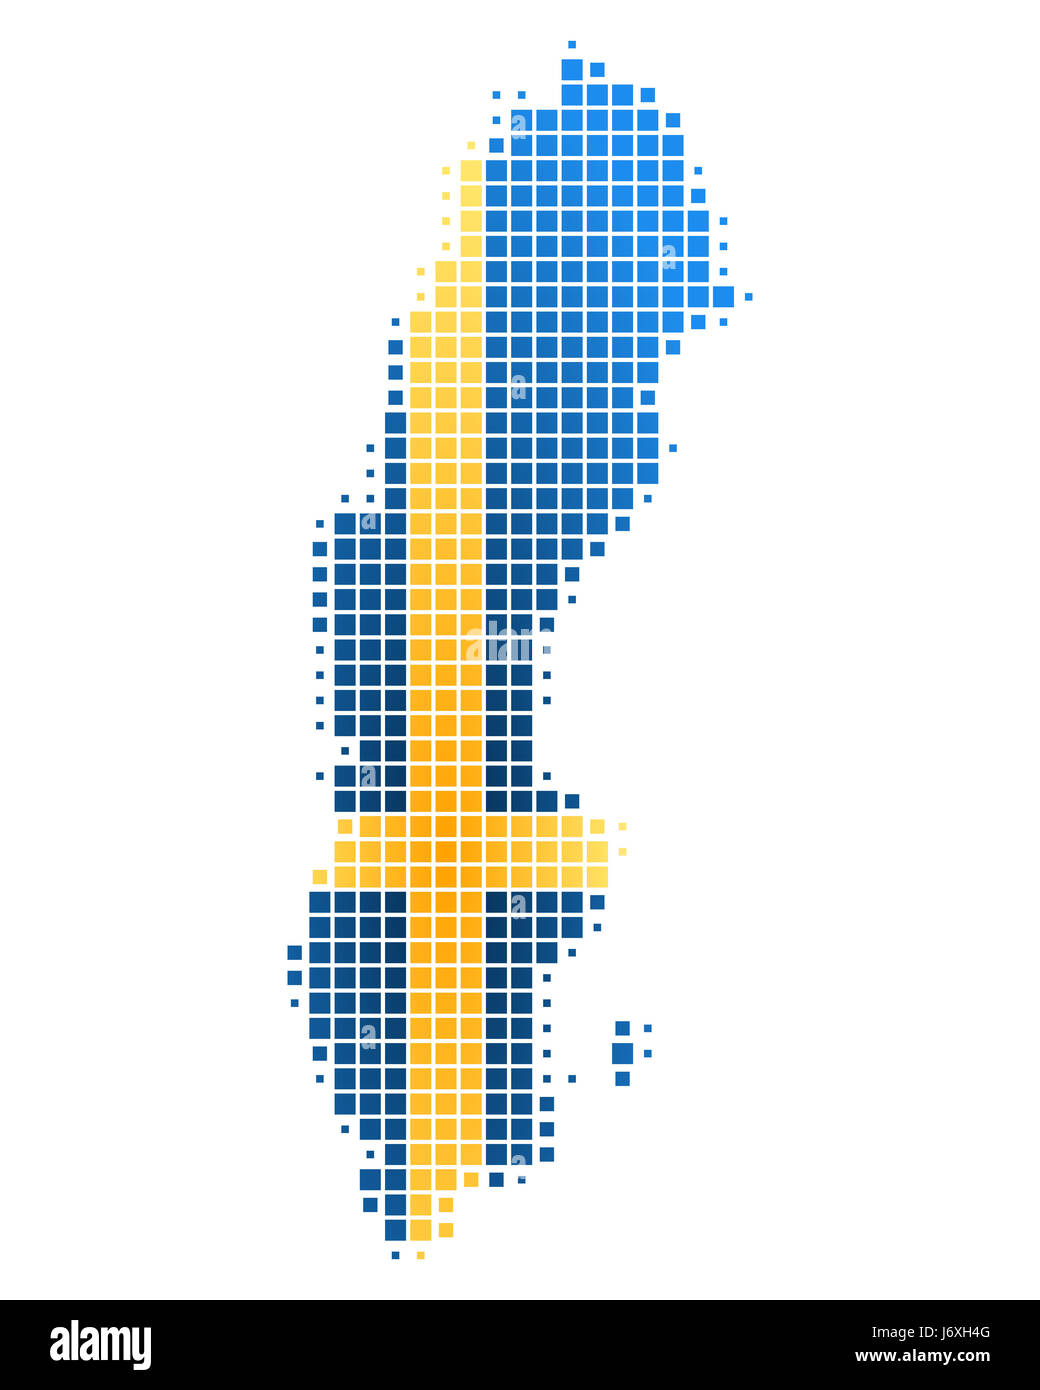 Bandiera della Svezia card scandinavia geografia atlas mappa del mondo mappa blue svezia Foto Stock